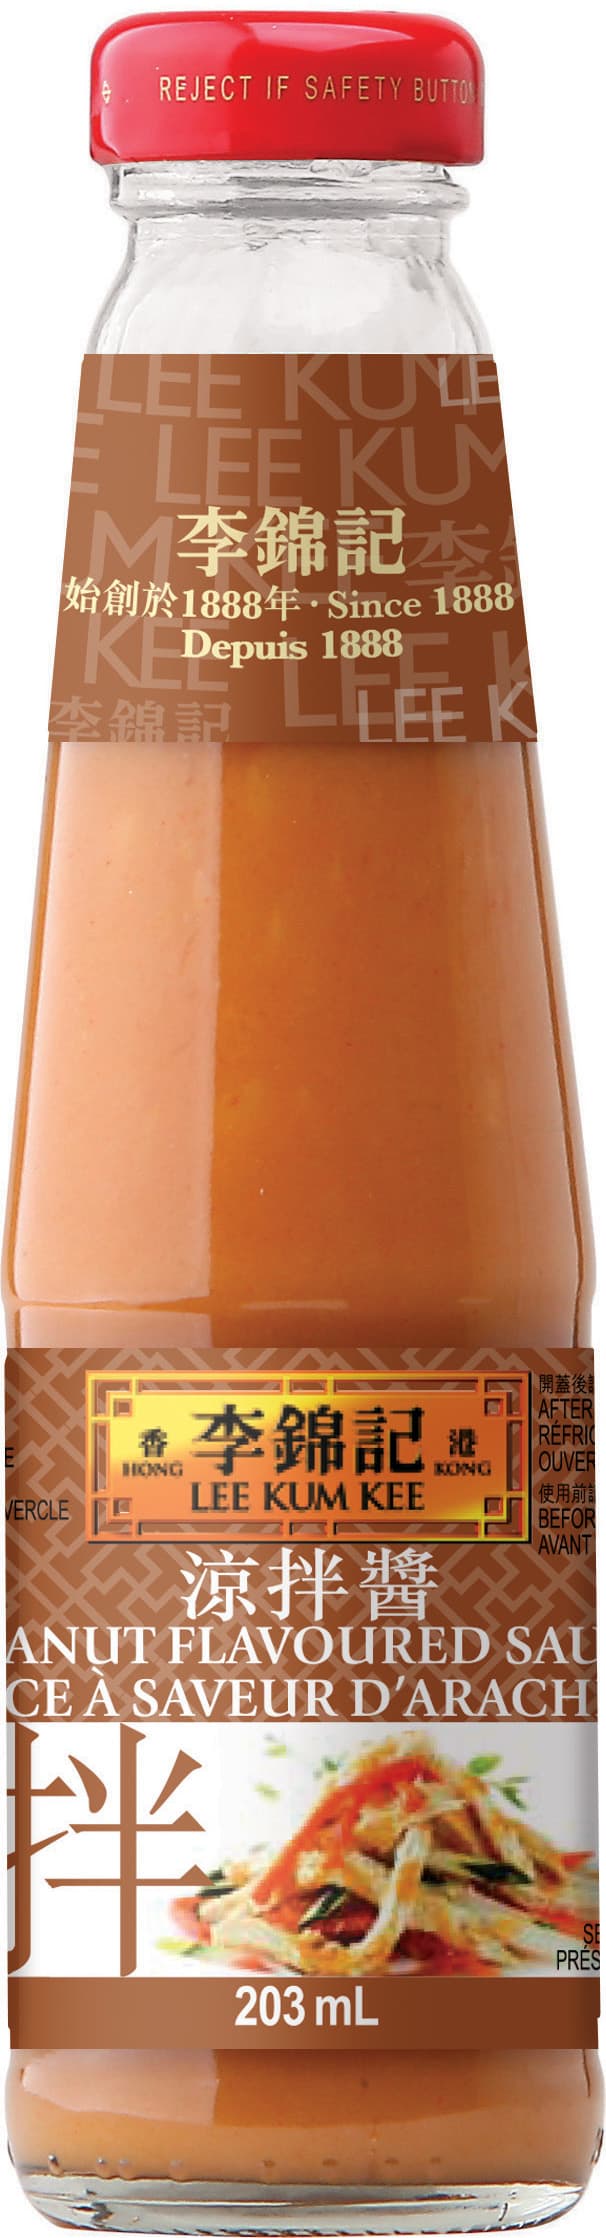 Peanut Flavoured Sauce 203ml 